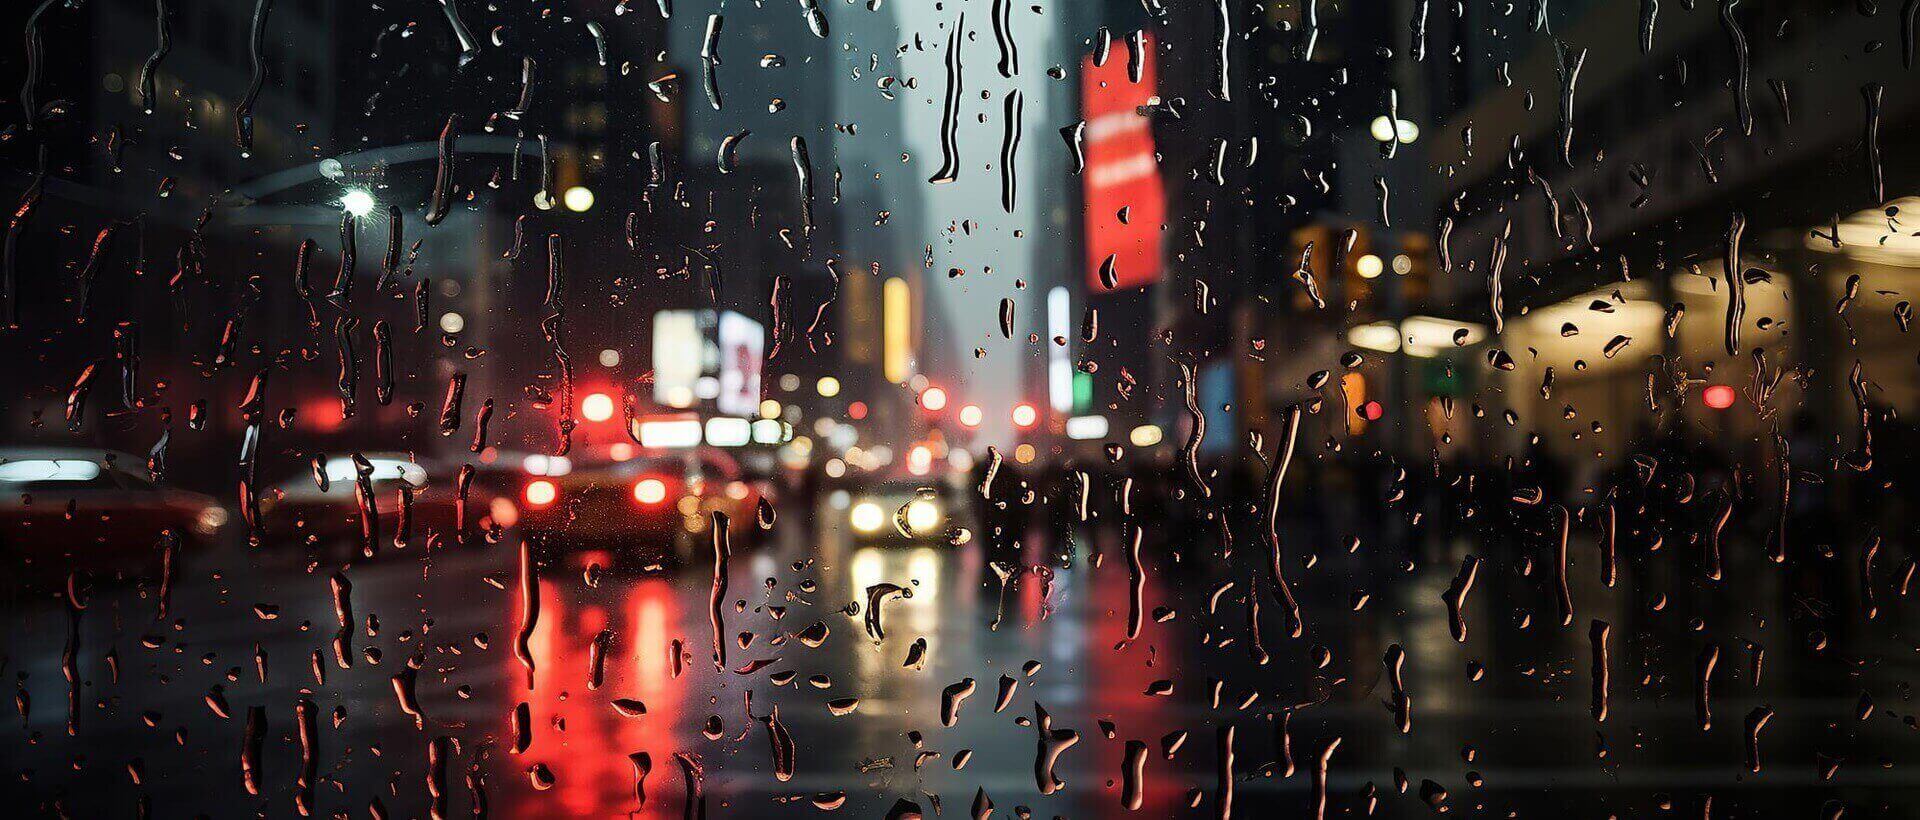 Пословицы и поговорки про дождь